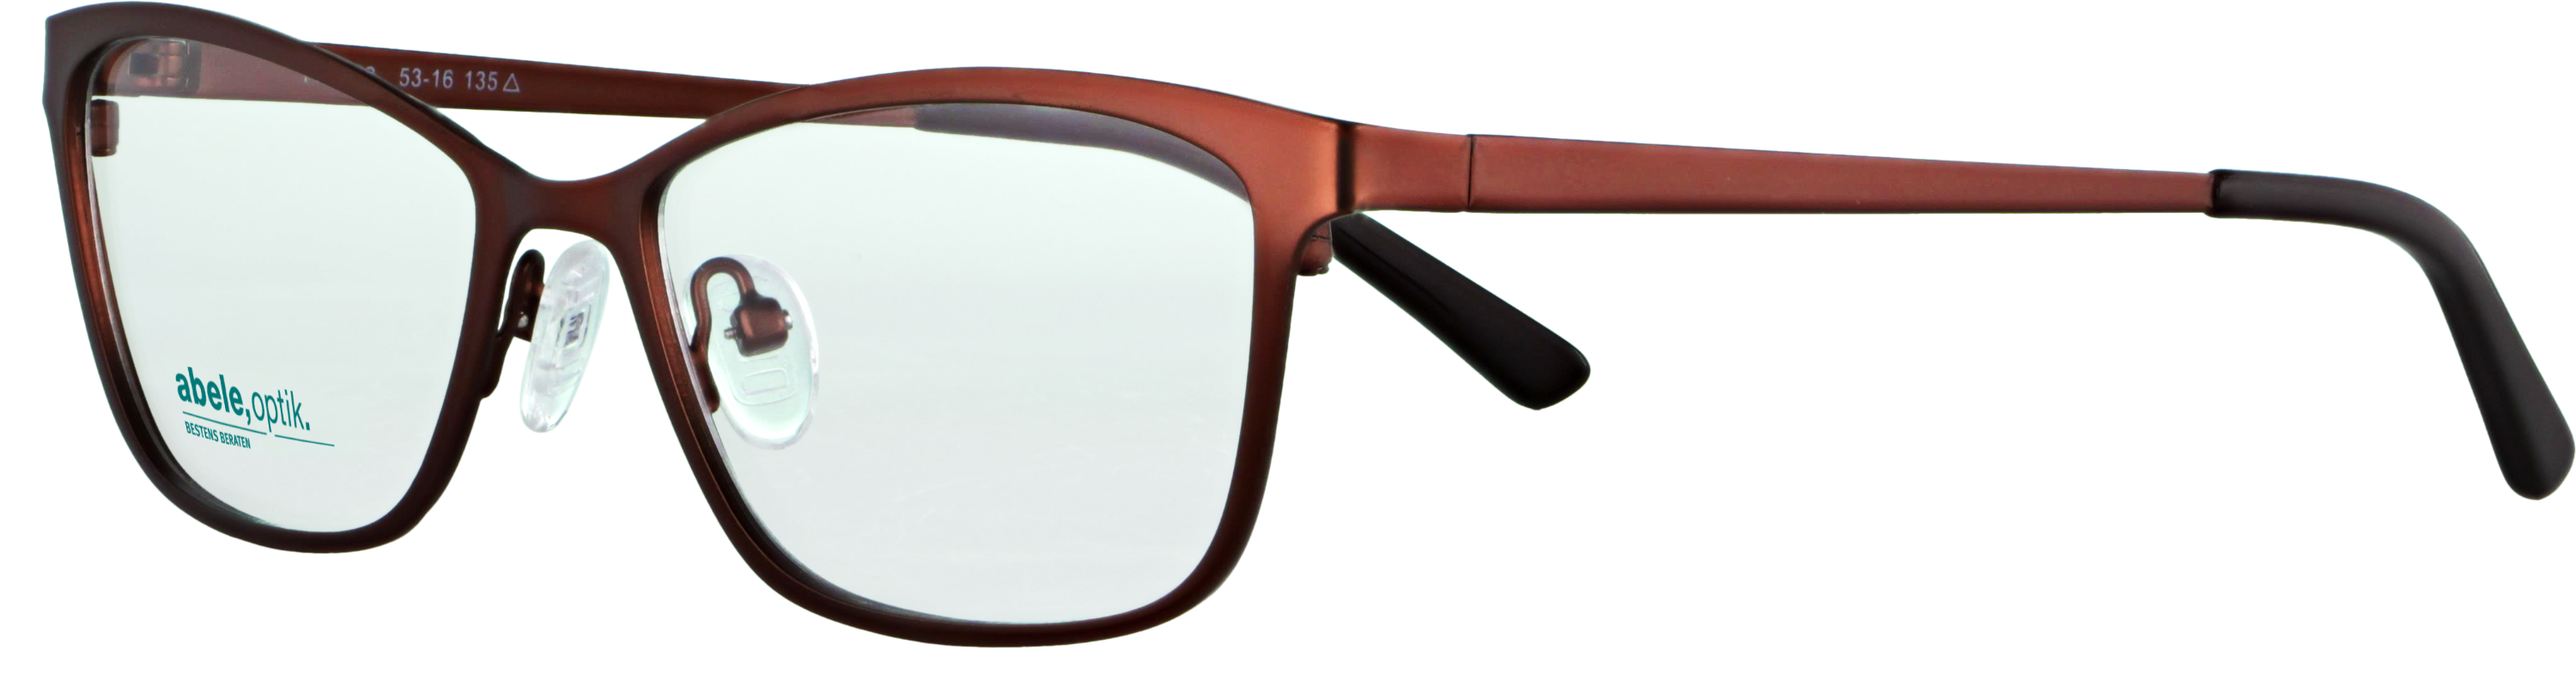 Das Bild zeigt die Korrektionsbrille 142222 von der Marke Abele Optik in rotbraun.